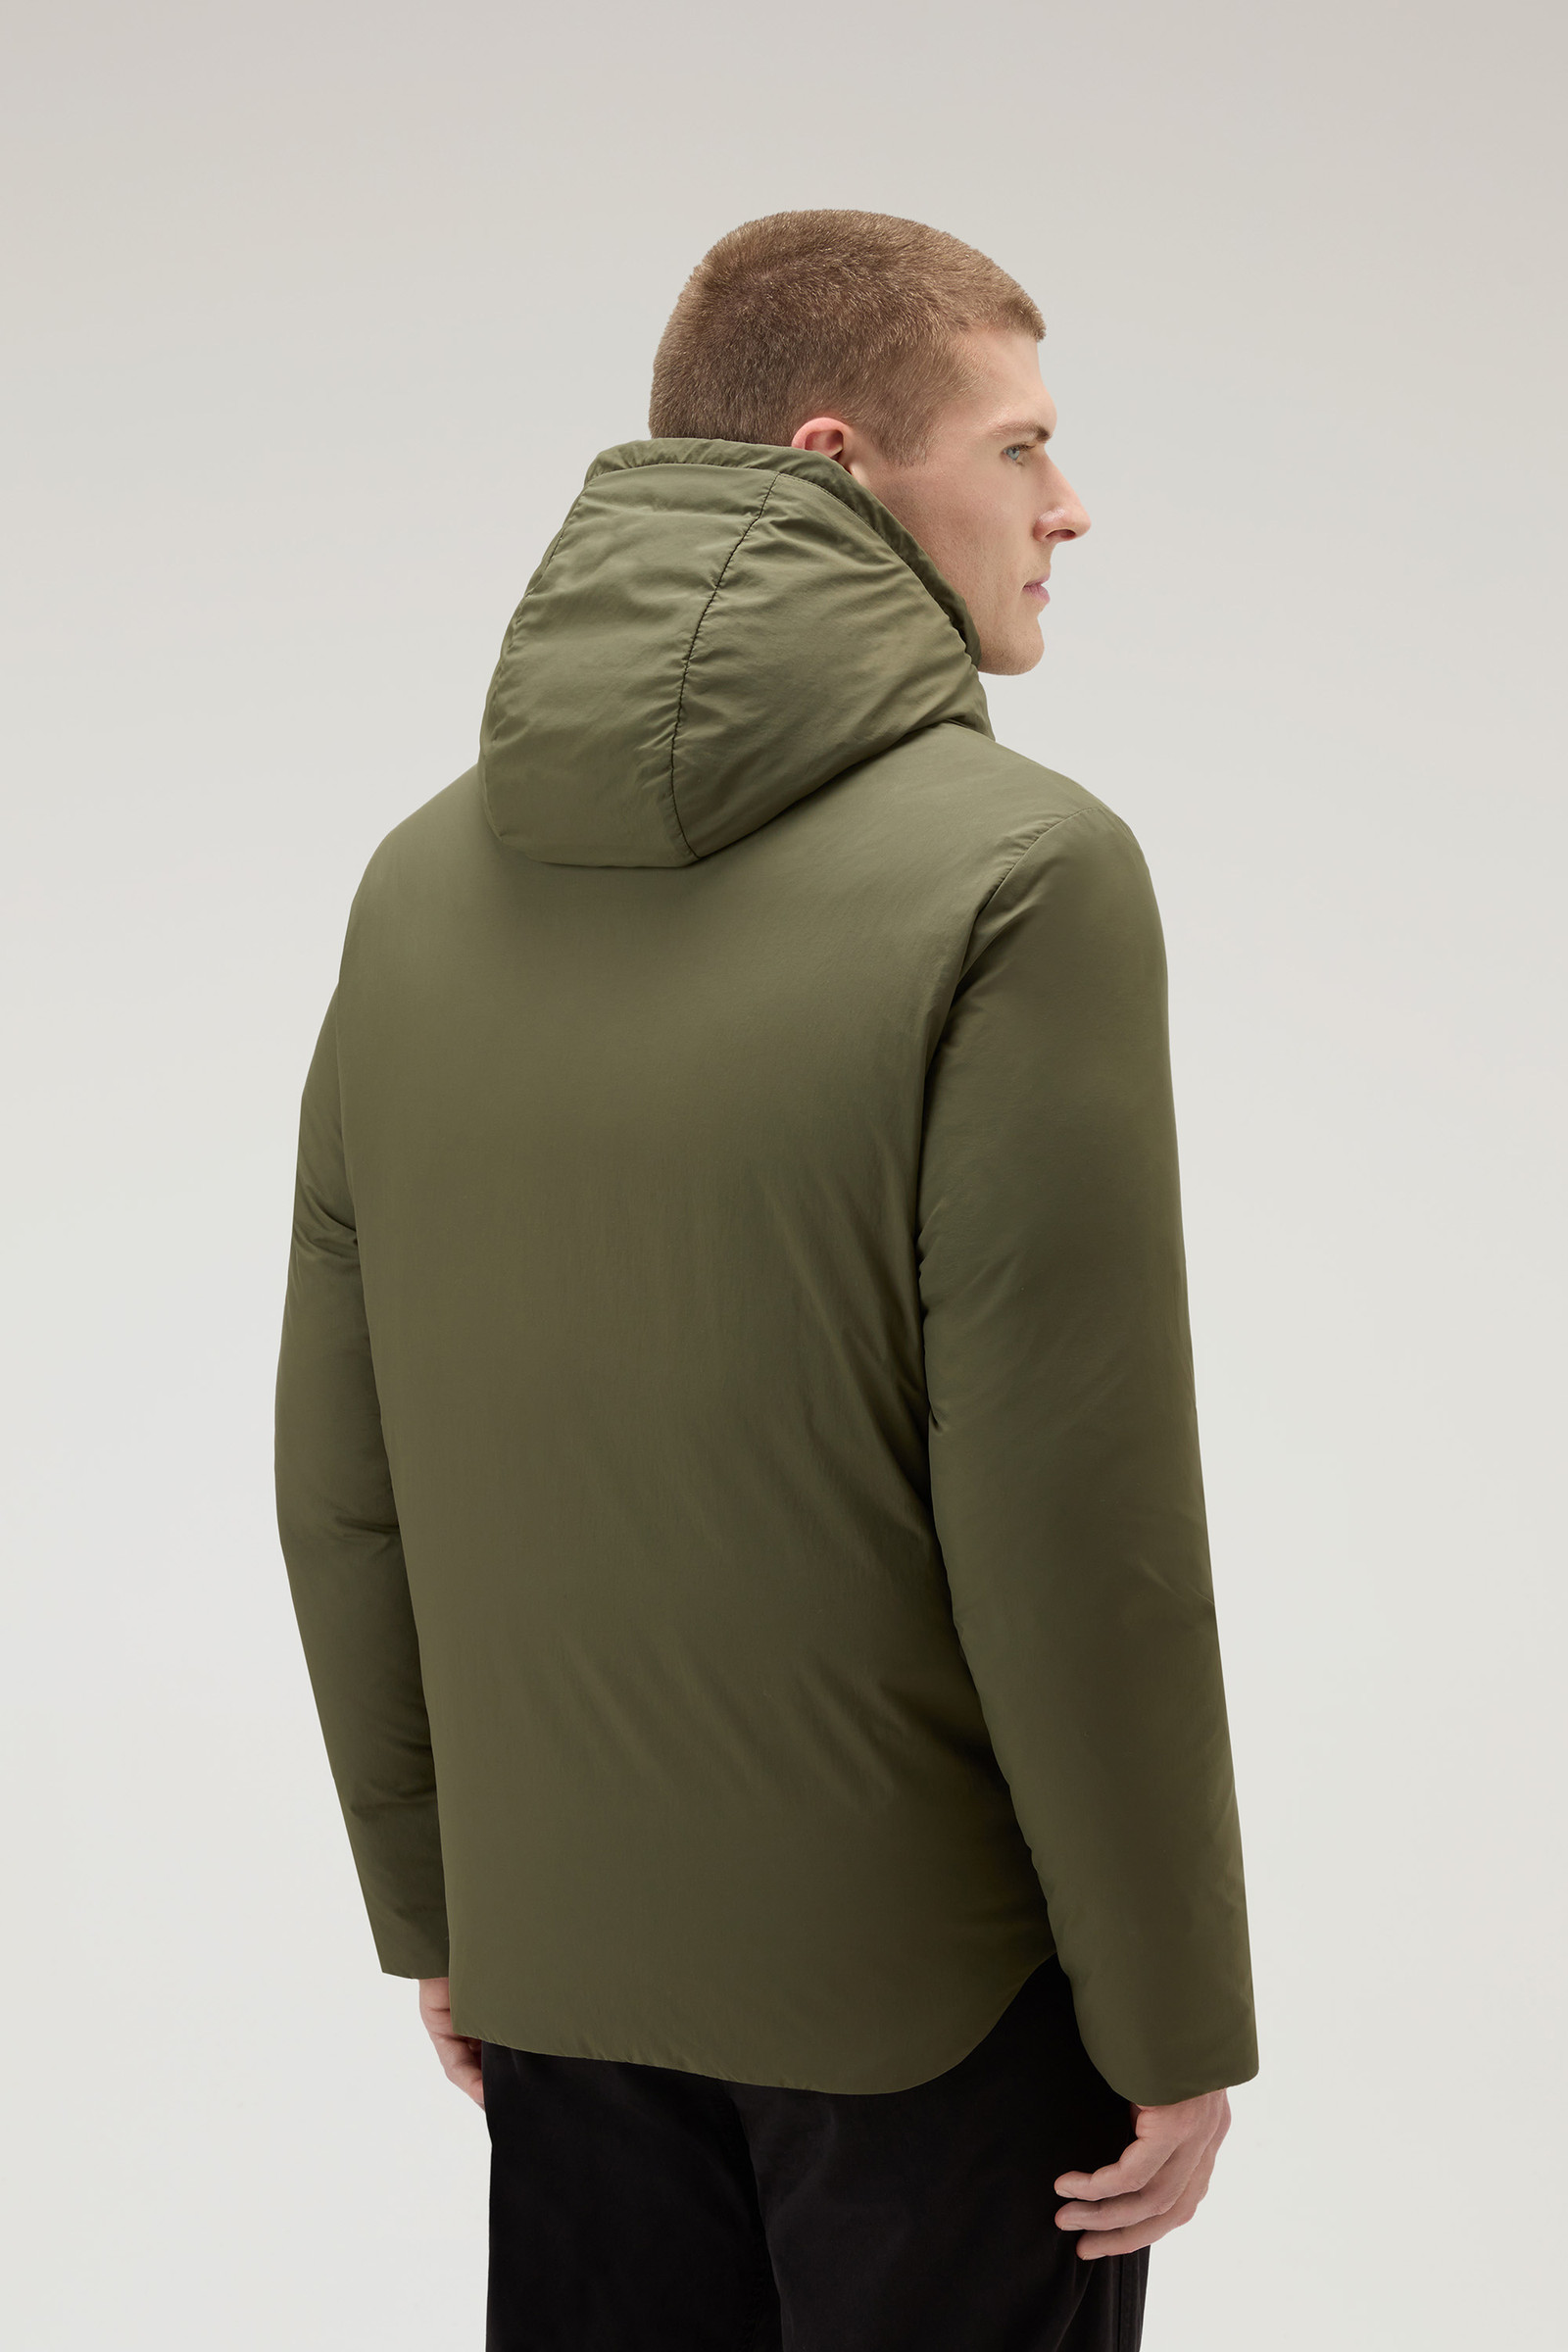 Men's Aleutian Jacket in Taslan Nylon Green | Woolrich USA